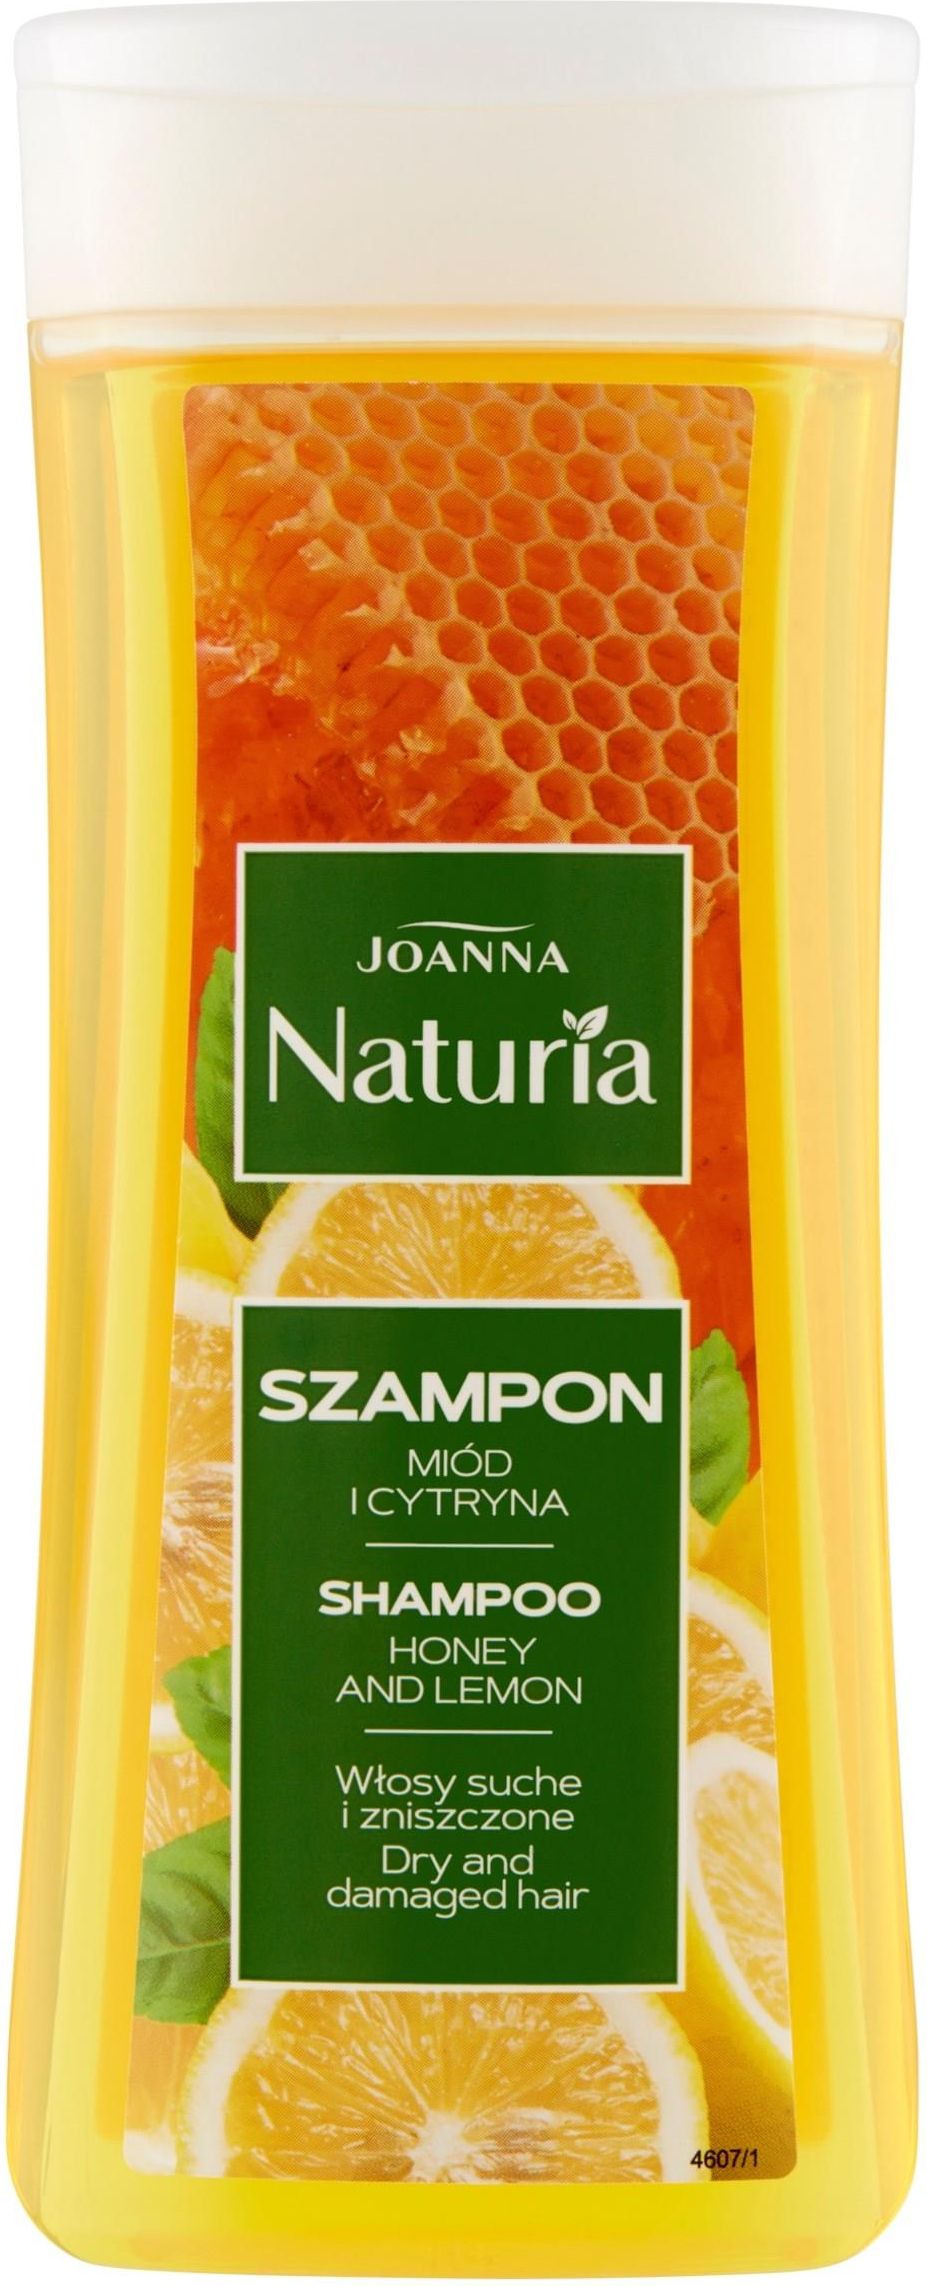 joanna naturia szampon miód cytryna